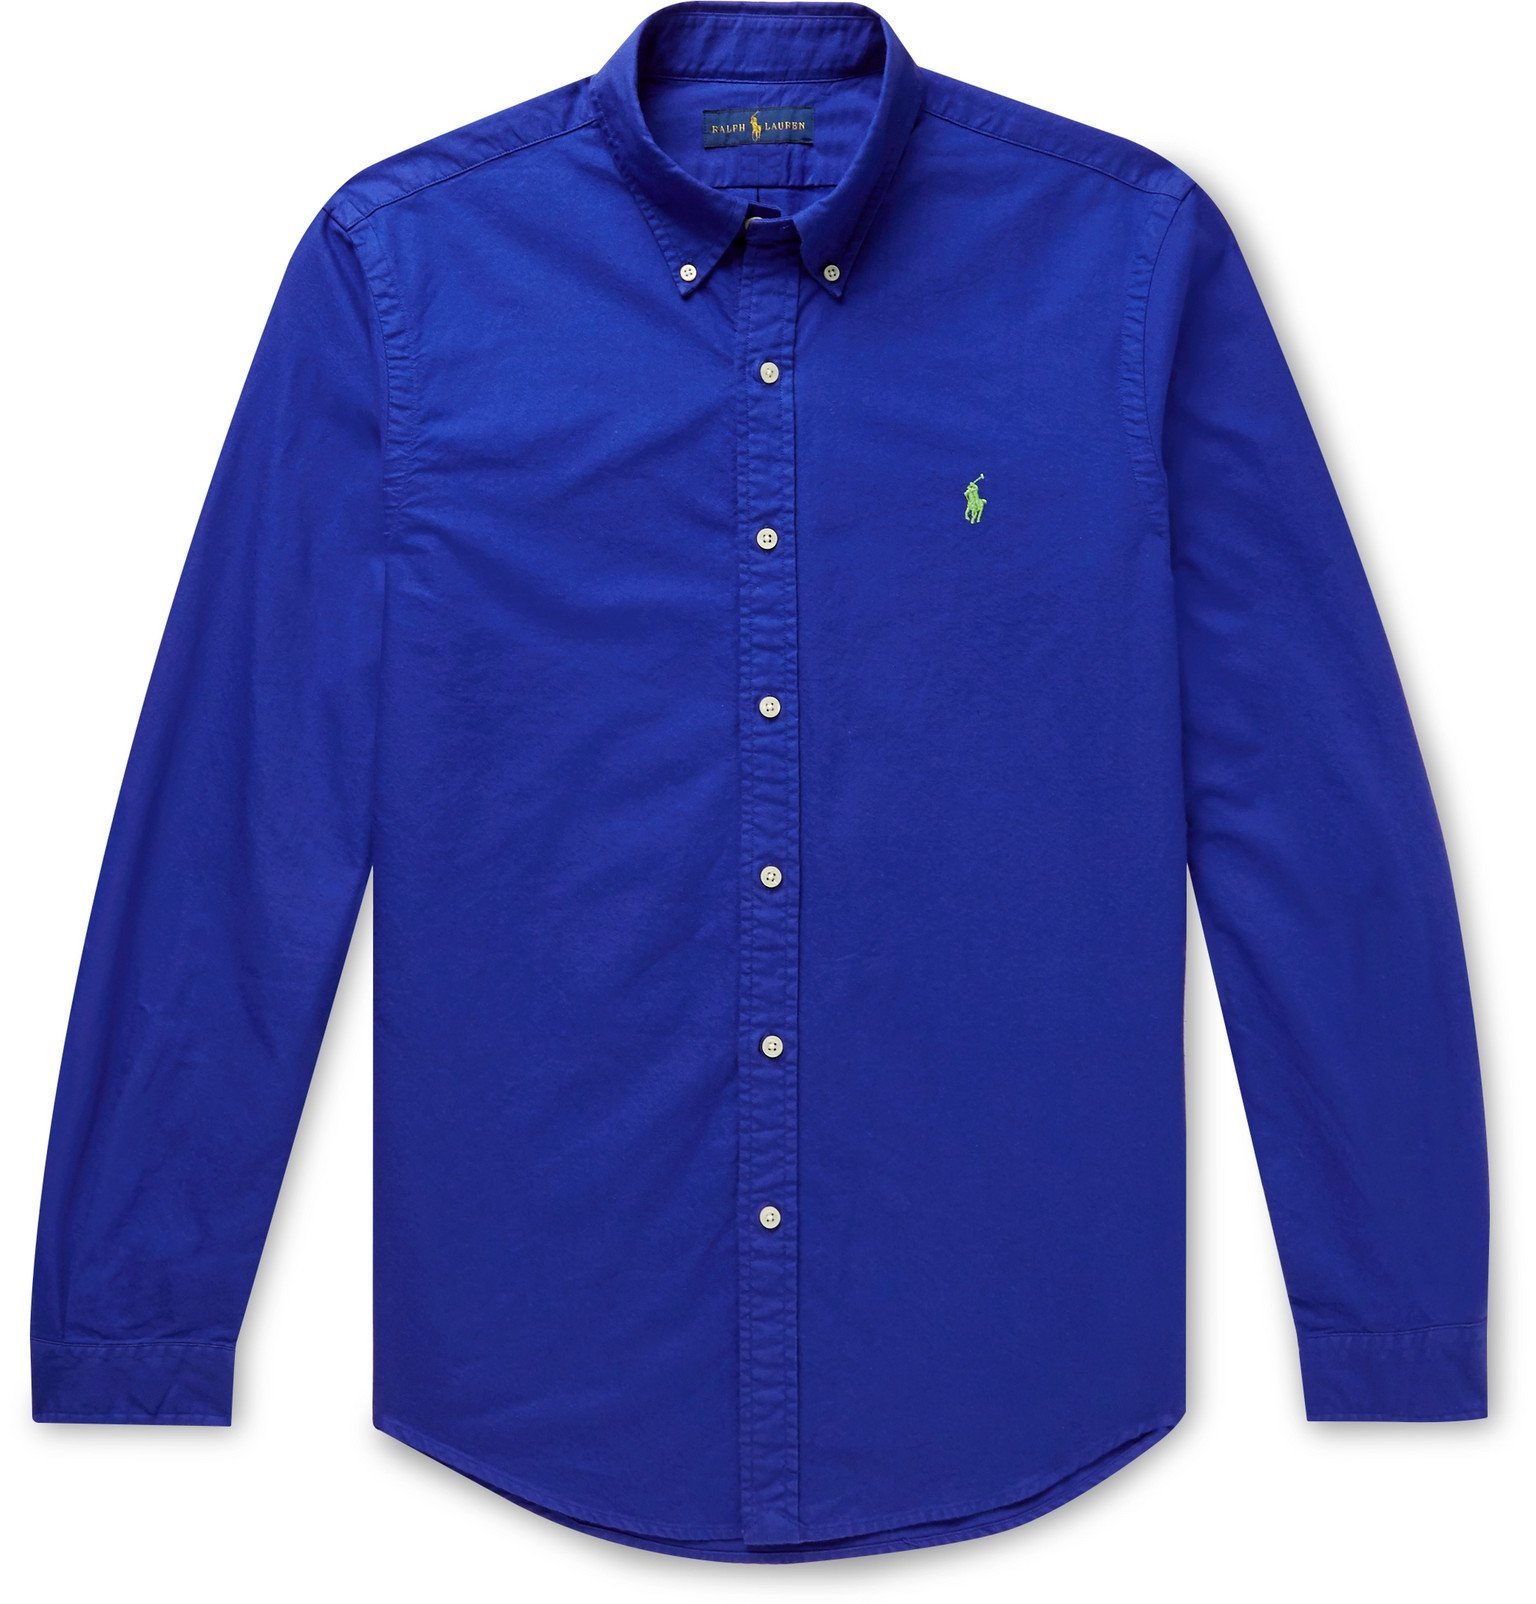 Polo Ralph Lauren - Slim-Fit Collar Garment-Dyed Oxford Shirt - Polo Ralph Lauren